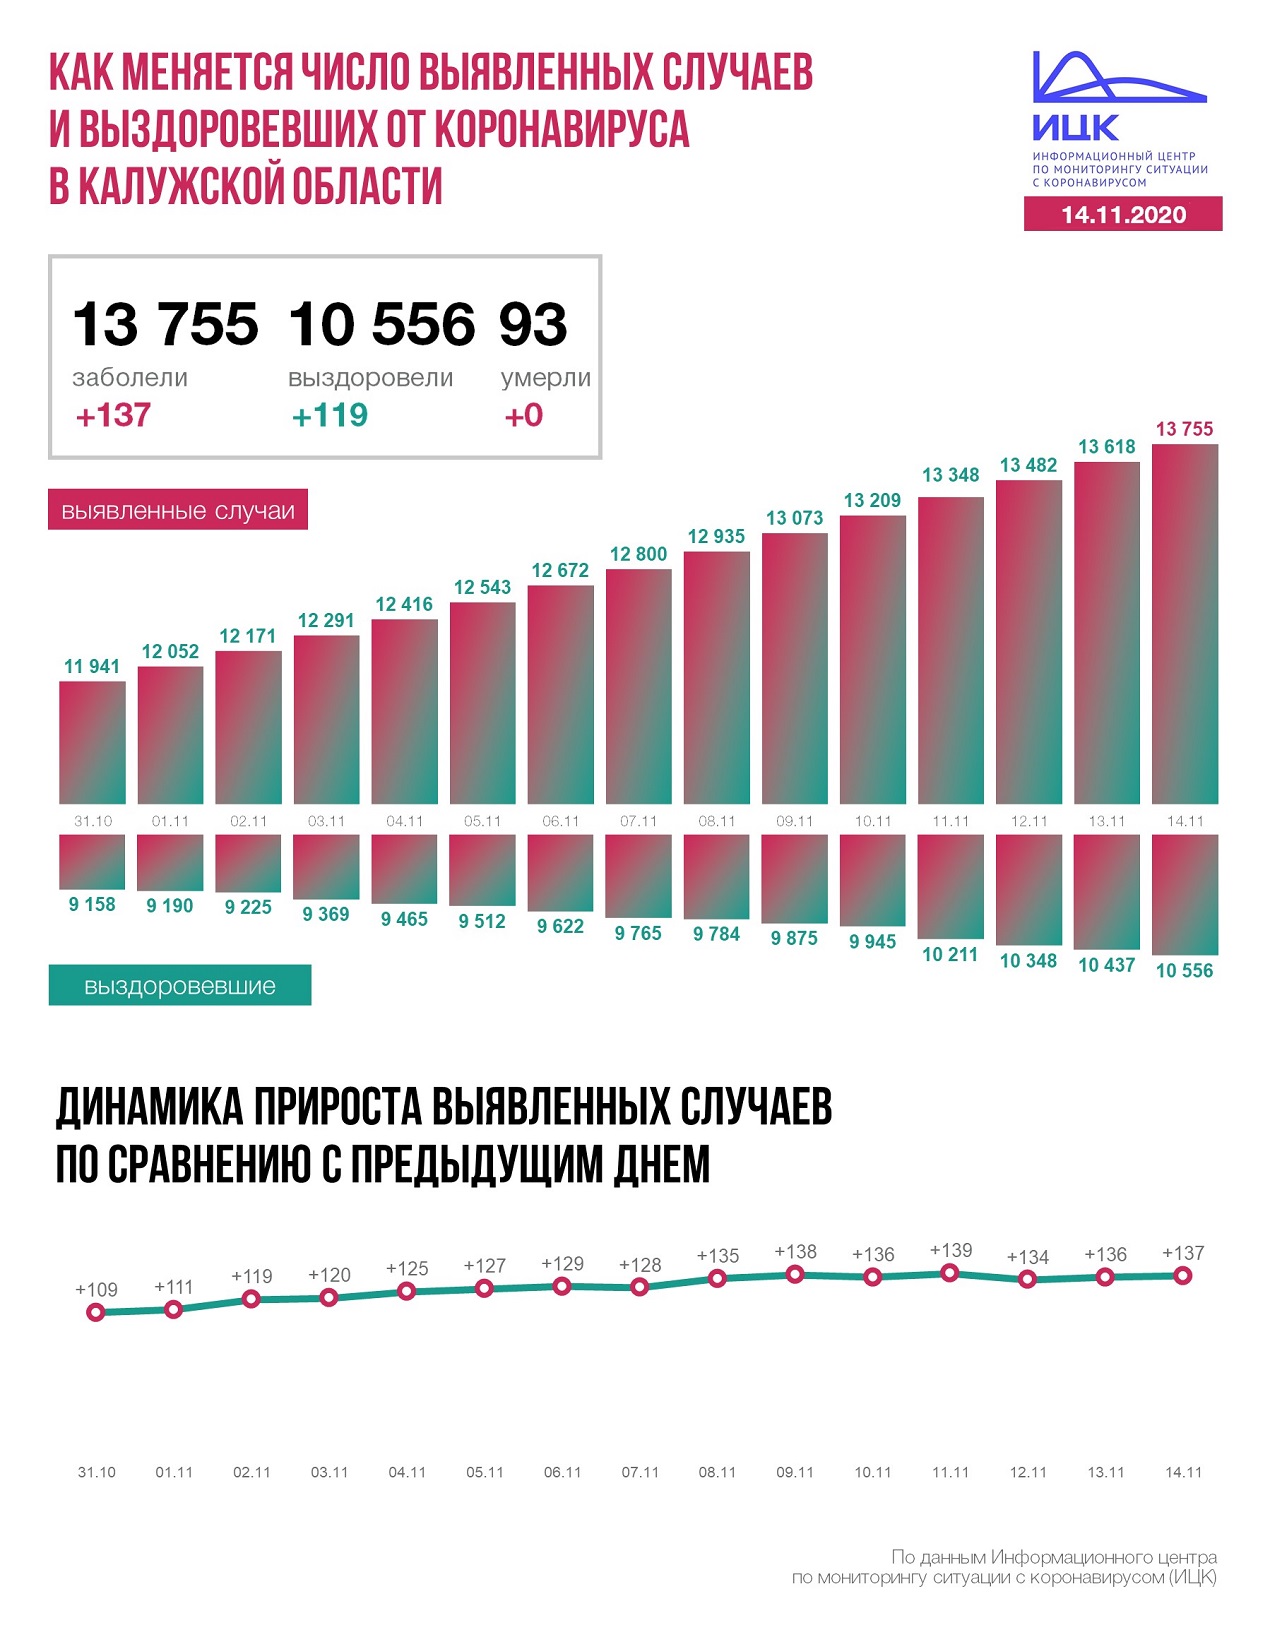 Официальные данные по коронавирусу в Калужской области на 14 ноября 2020 года.